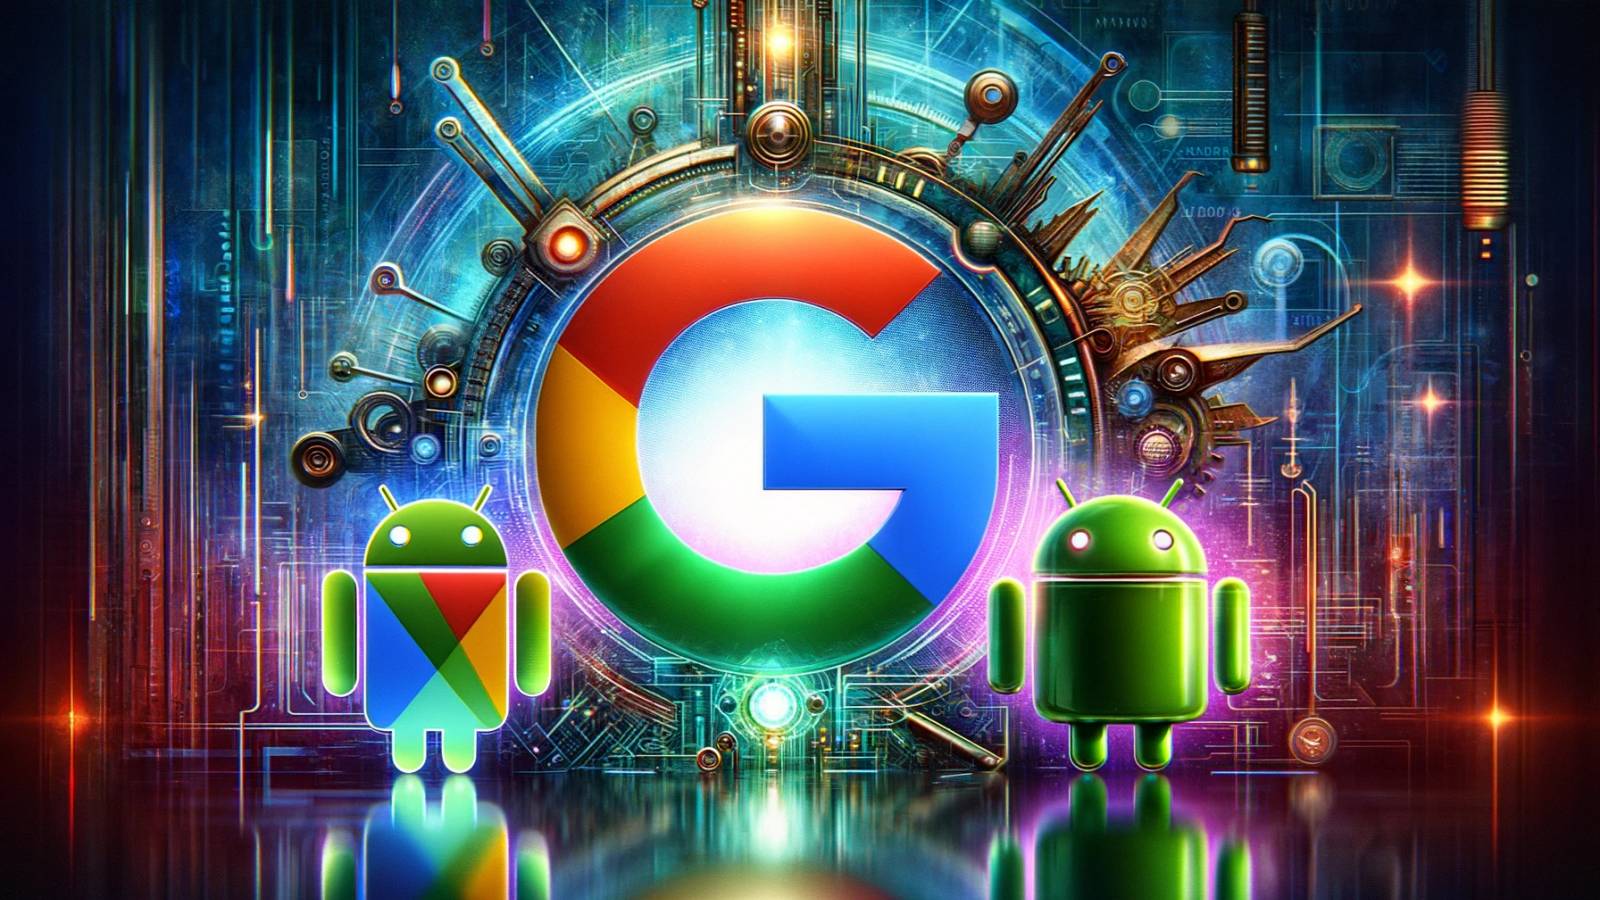 Google Ad Äußerst besorgniserregende Probleme mit Android, iOS und Windows